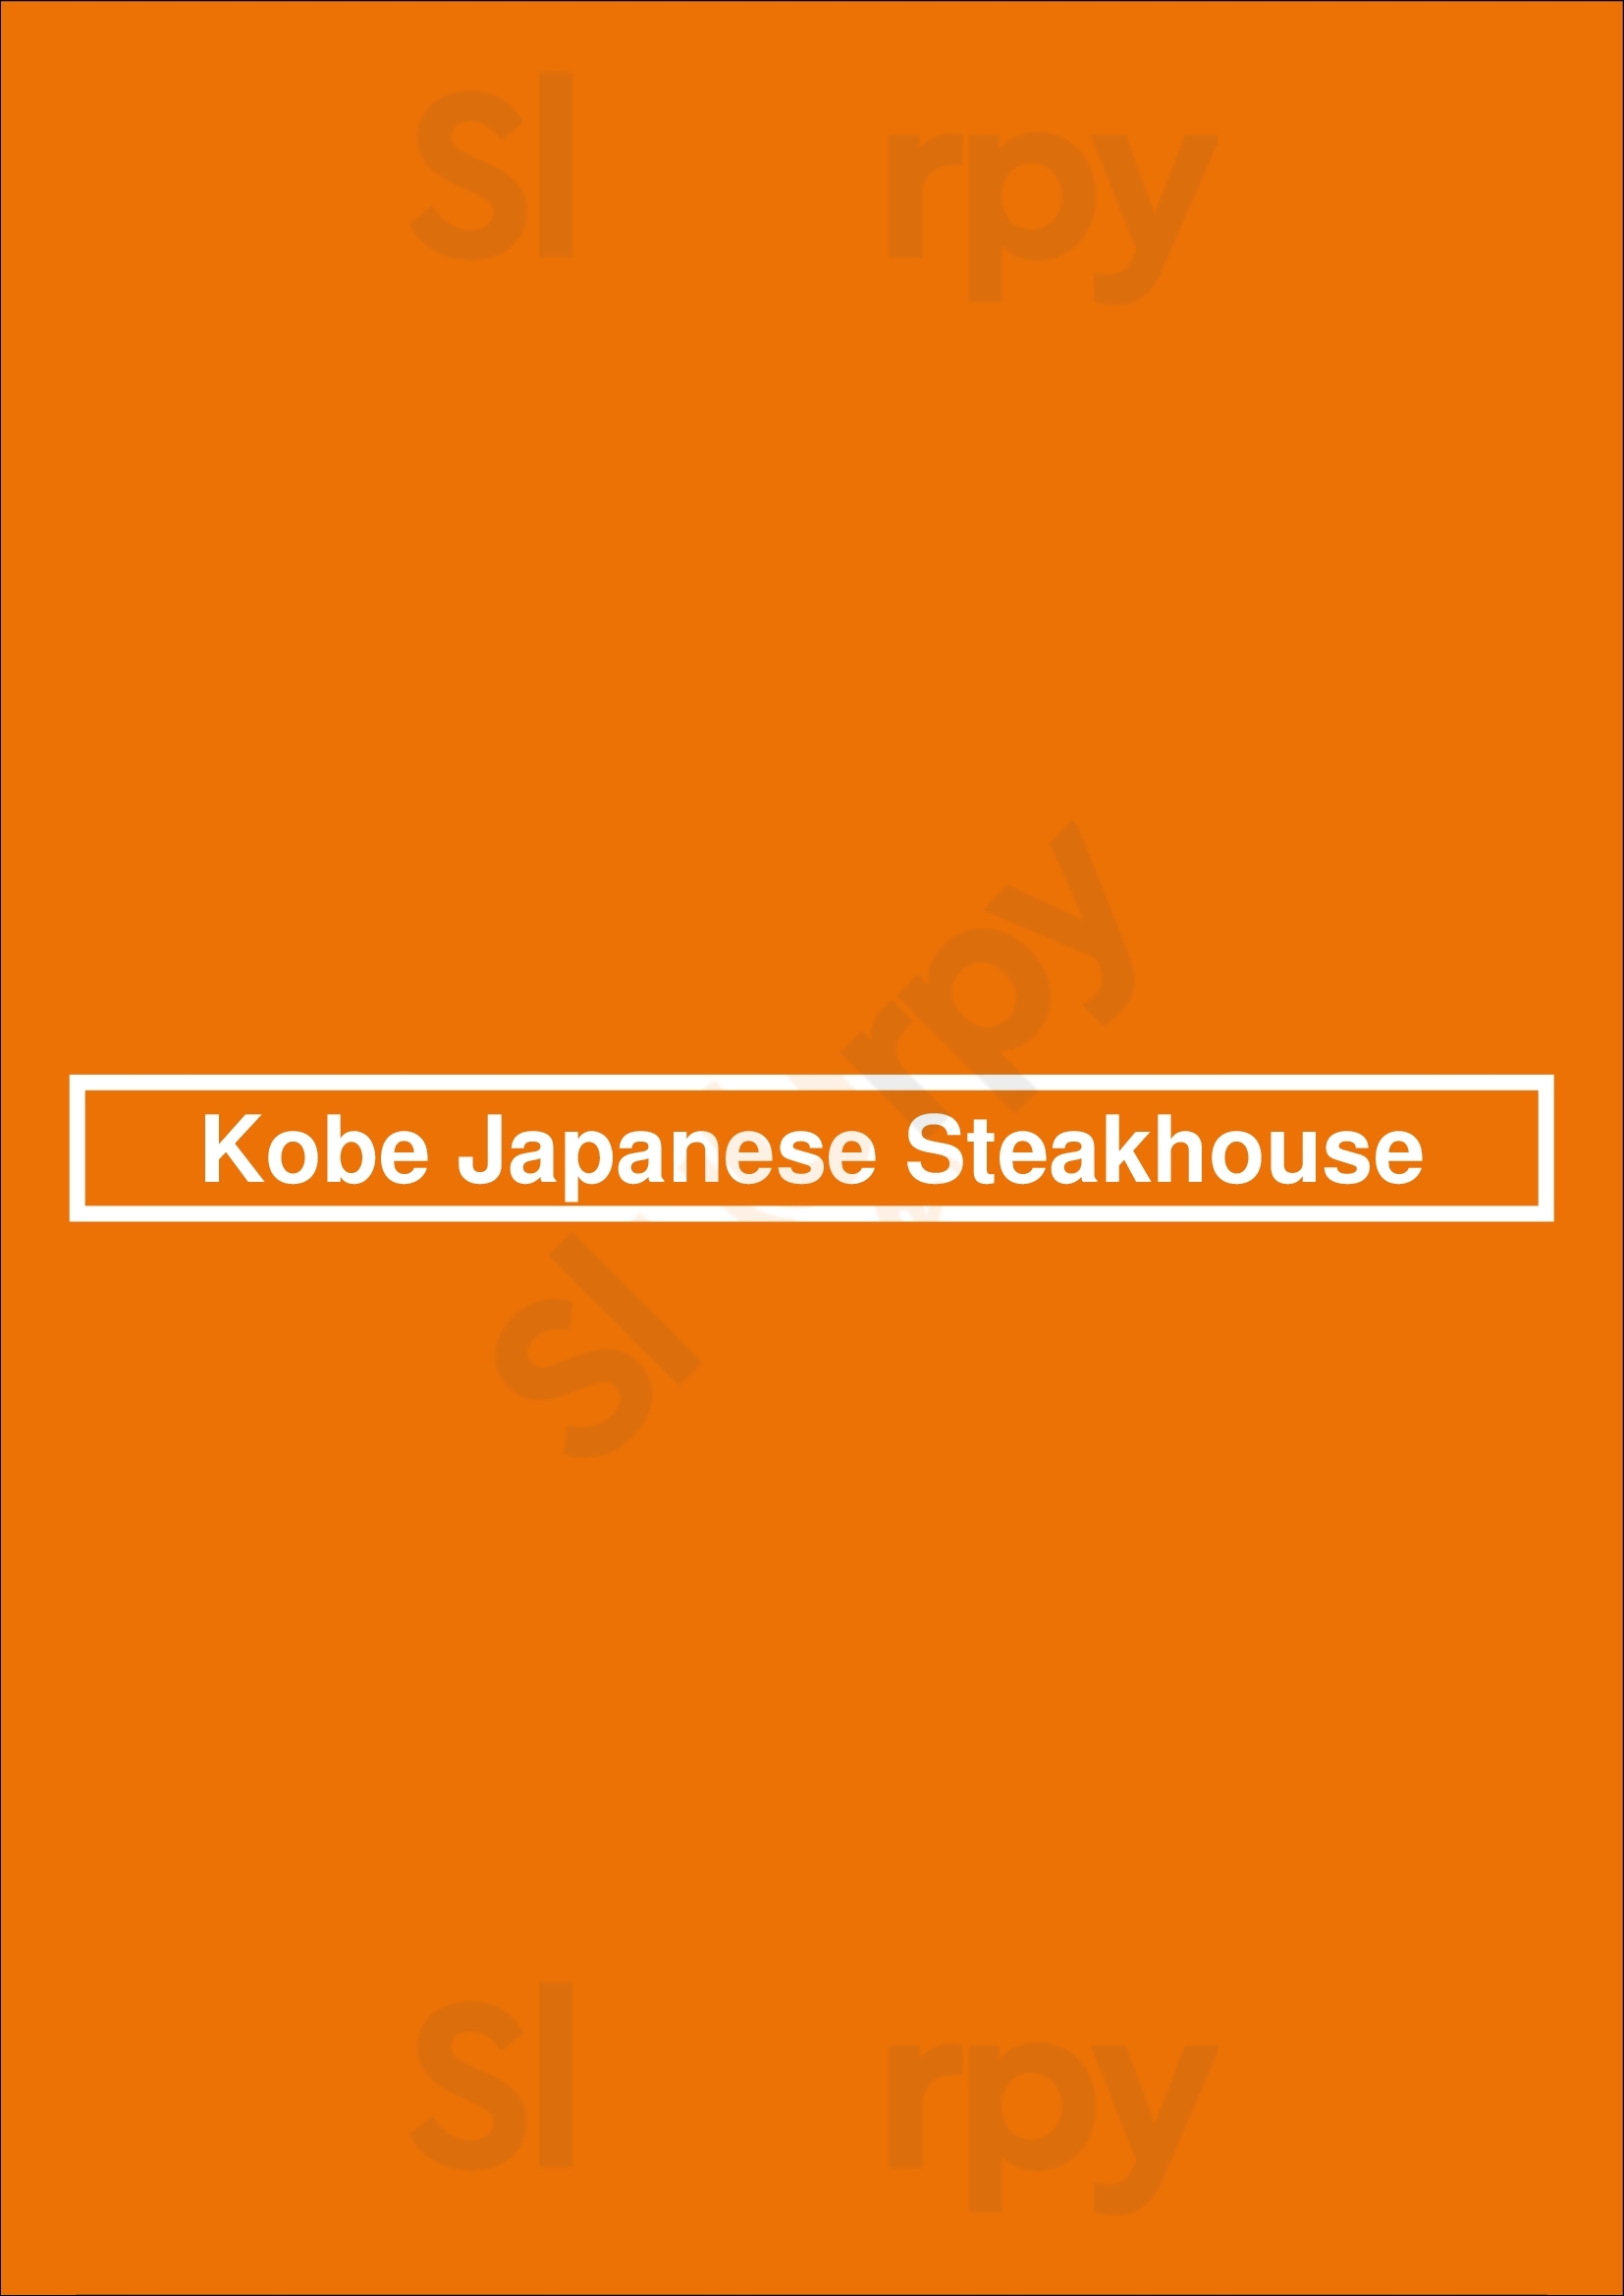 Kobe Japanese Steakhouse Brandon Menu - 1